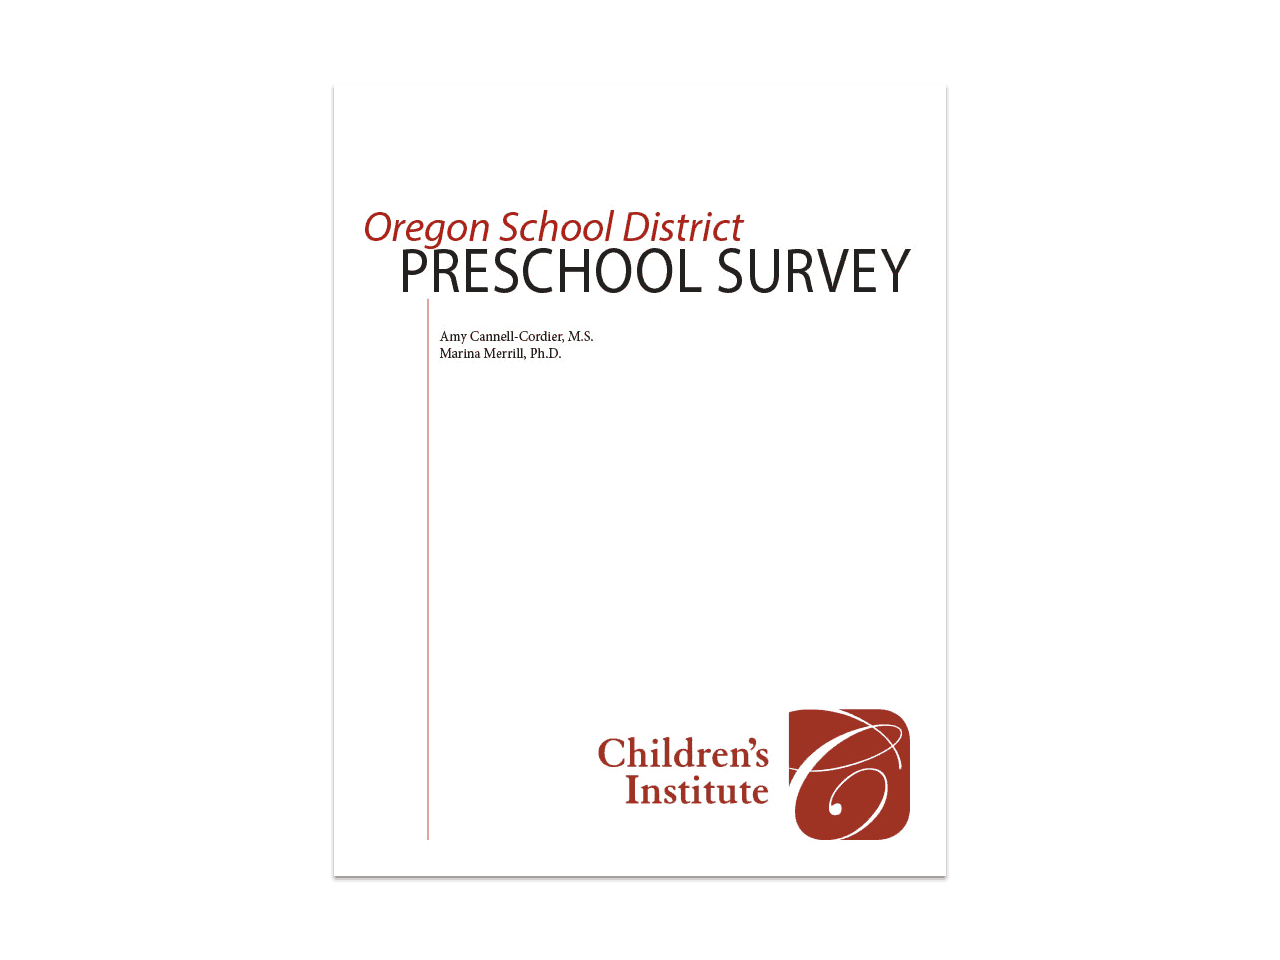 Oregon School District Preschool Survey